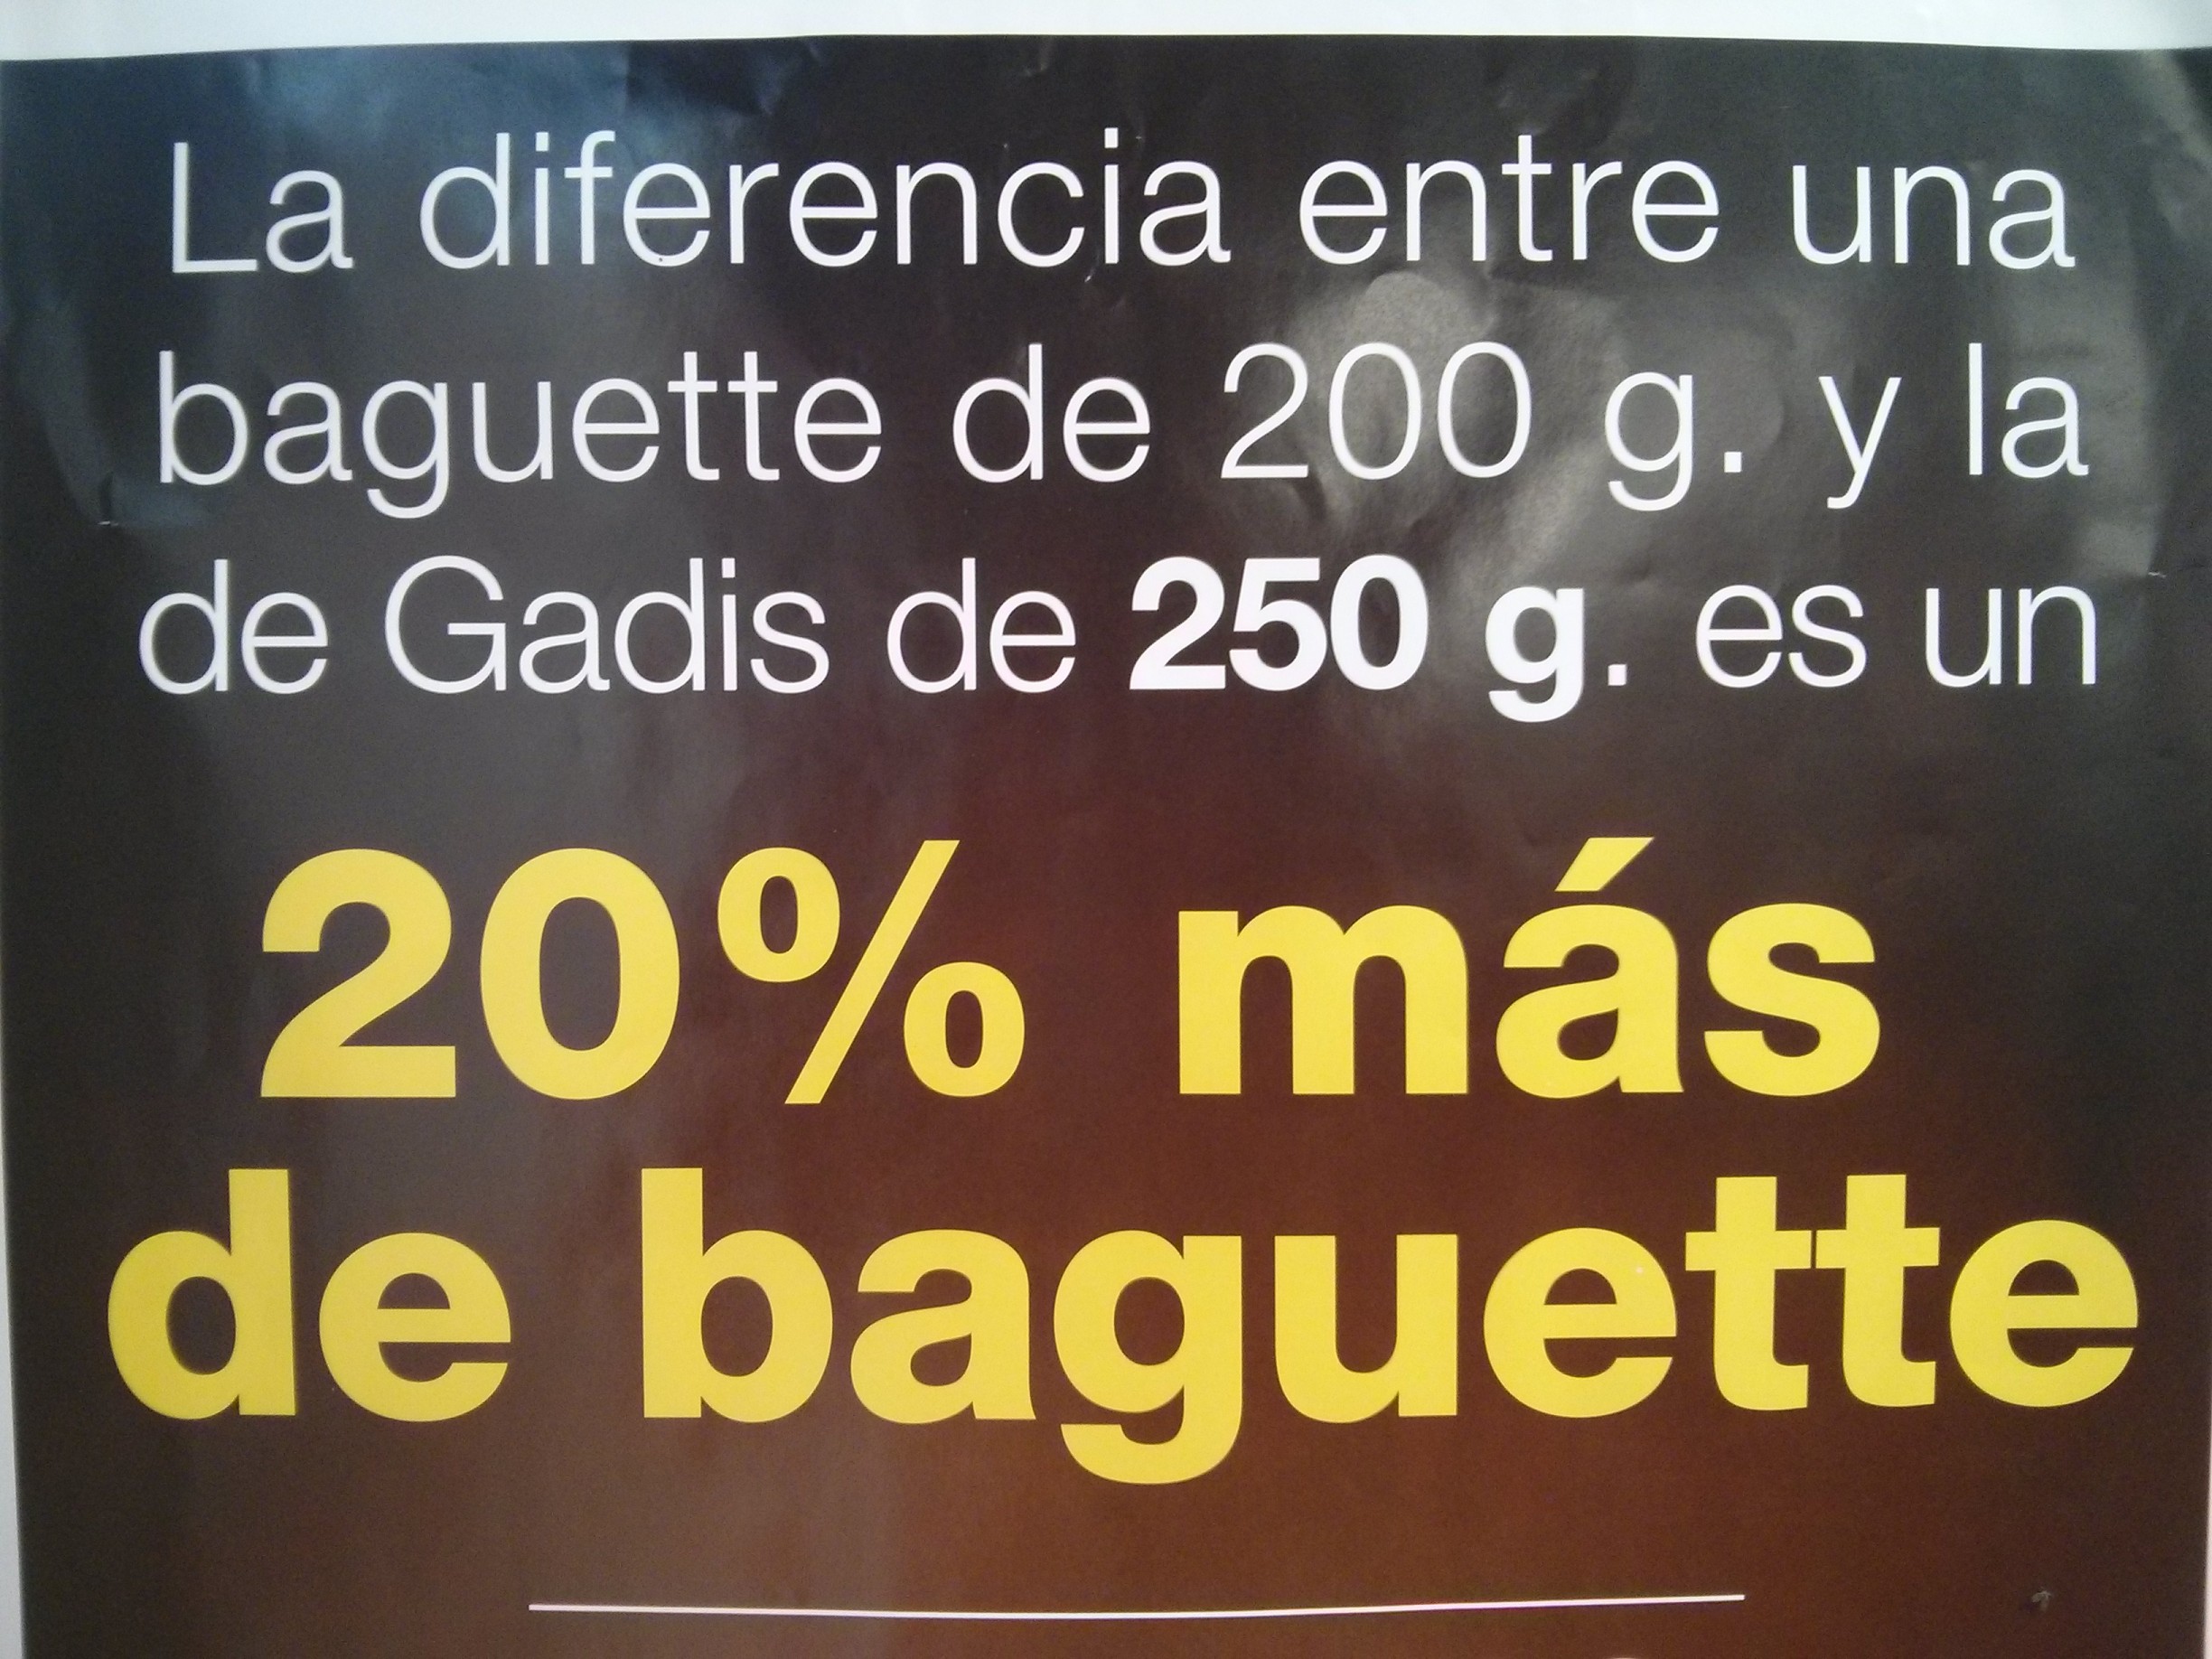 Cartel que dice: "La diferencia entre una baguette de 200 g. y la de Gadis de 250 g. es un 20% más de baguette".